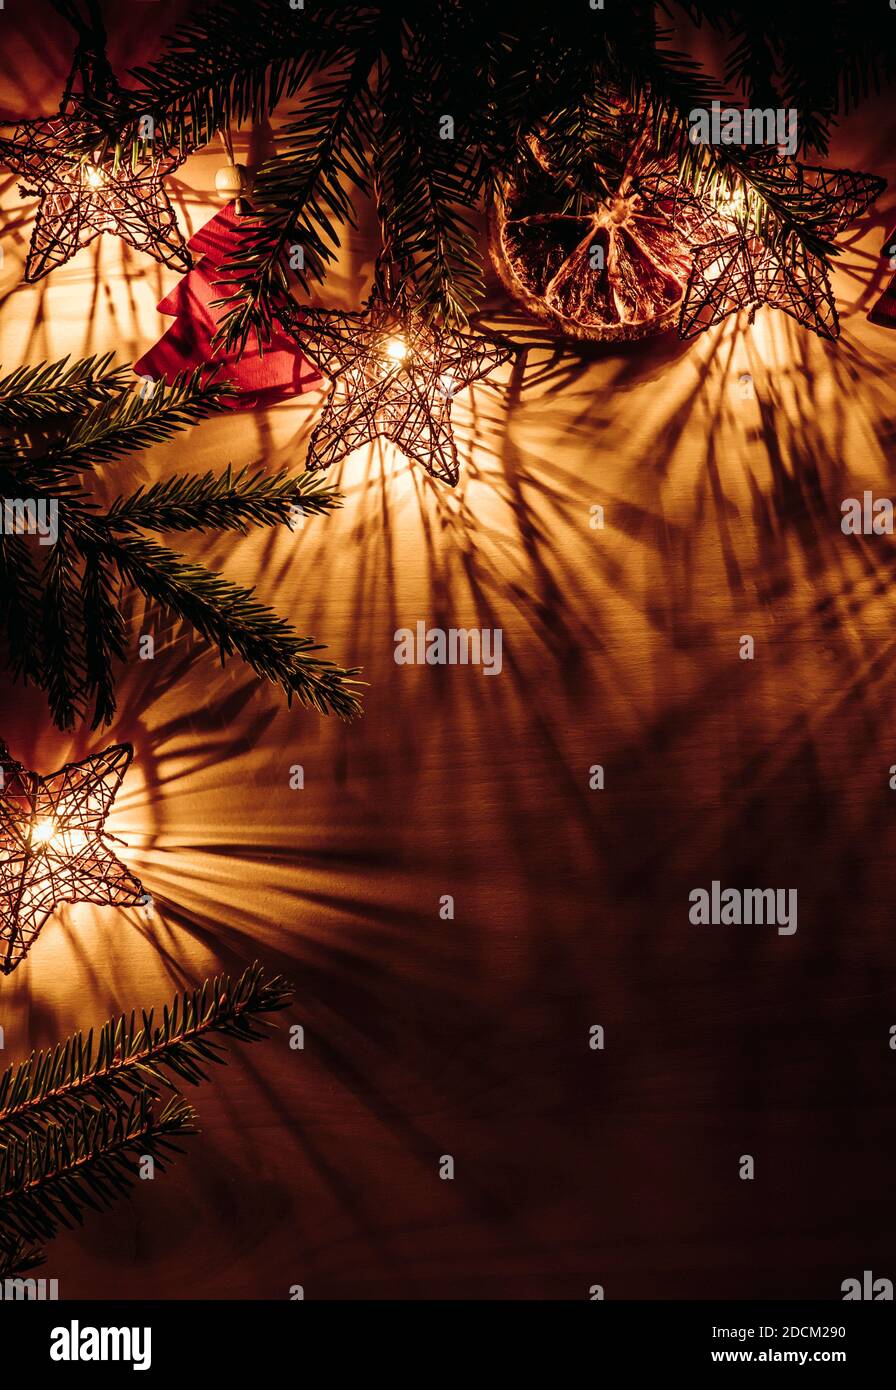 Sfondo di Natale, bordo superiore con rami di abete rosso forma stella luci partito illuminato, a fette arancio secco e figurine a forma di albero rosso. Foto Stock